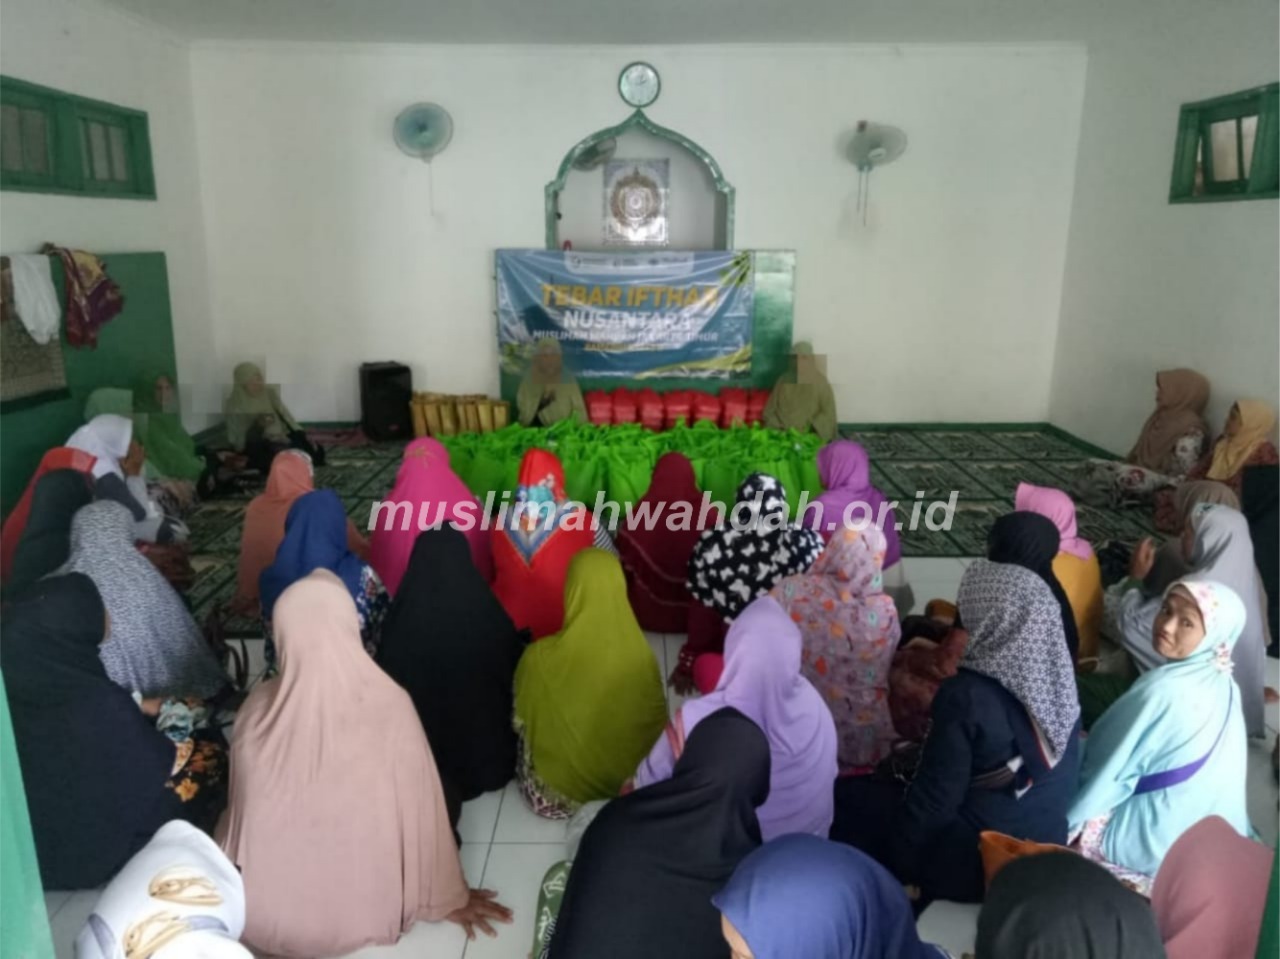 Momentum Bulan Berbagi, Muslimah Wahdah Jakarta-Depok Gelar Tebar Ifthar